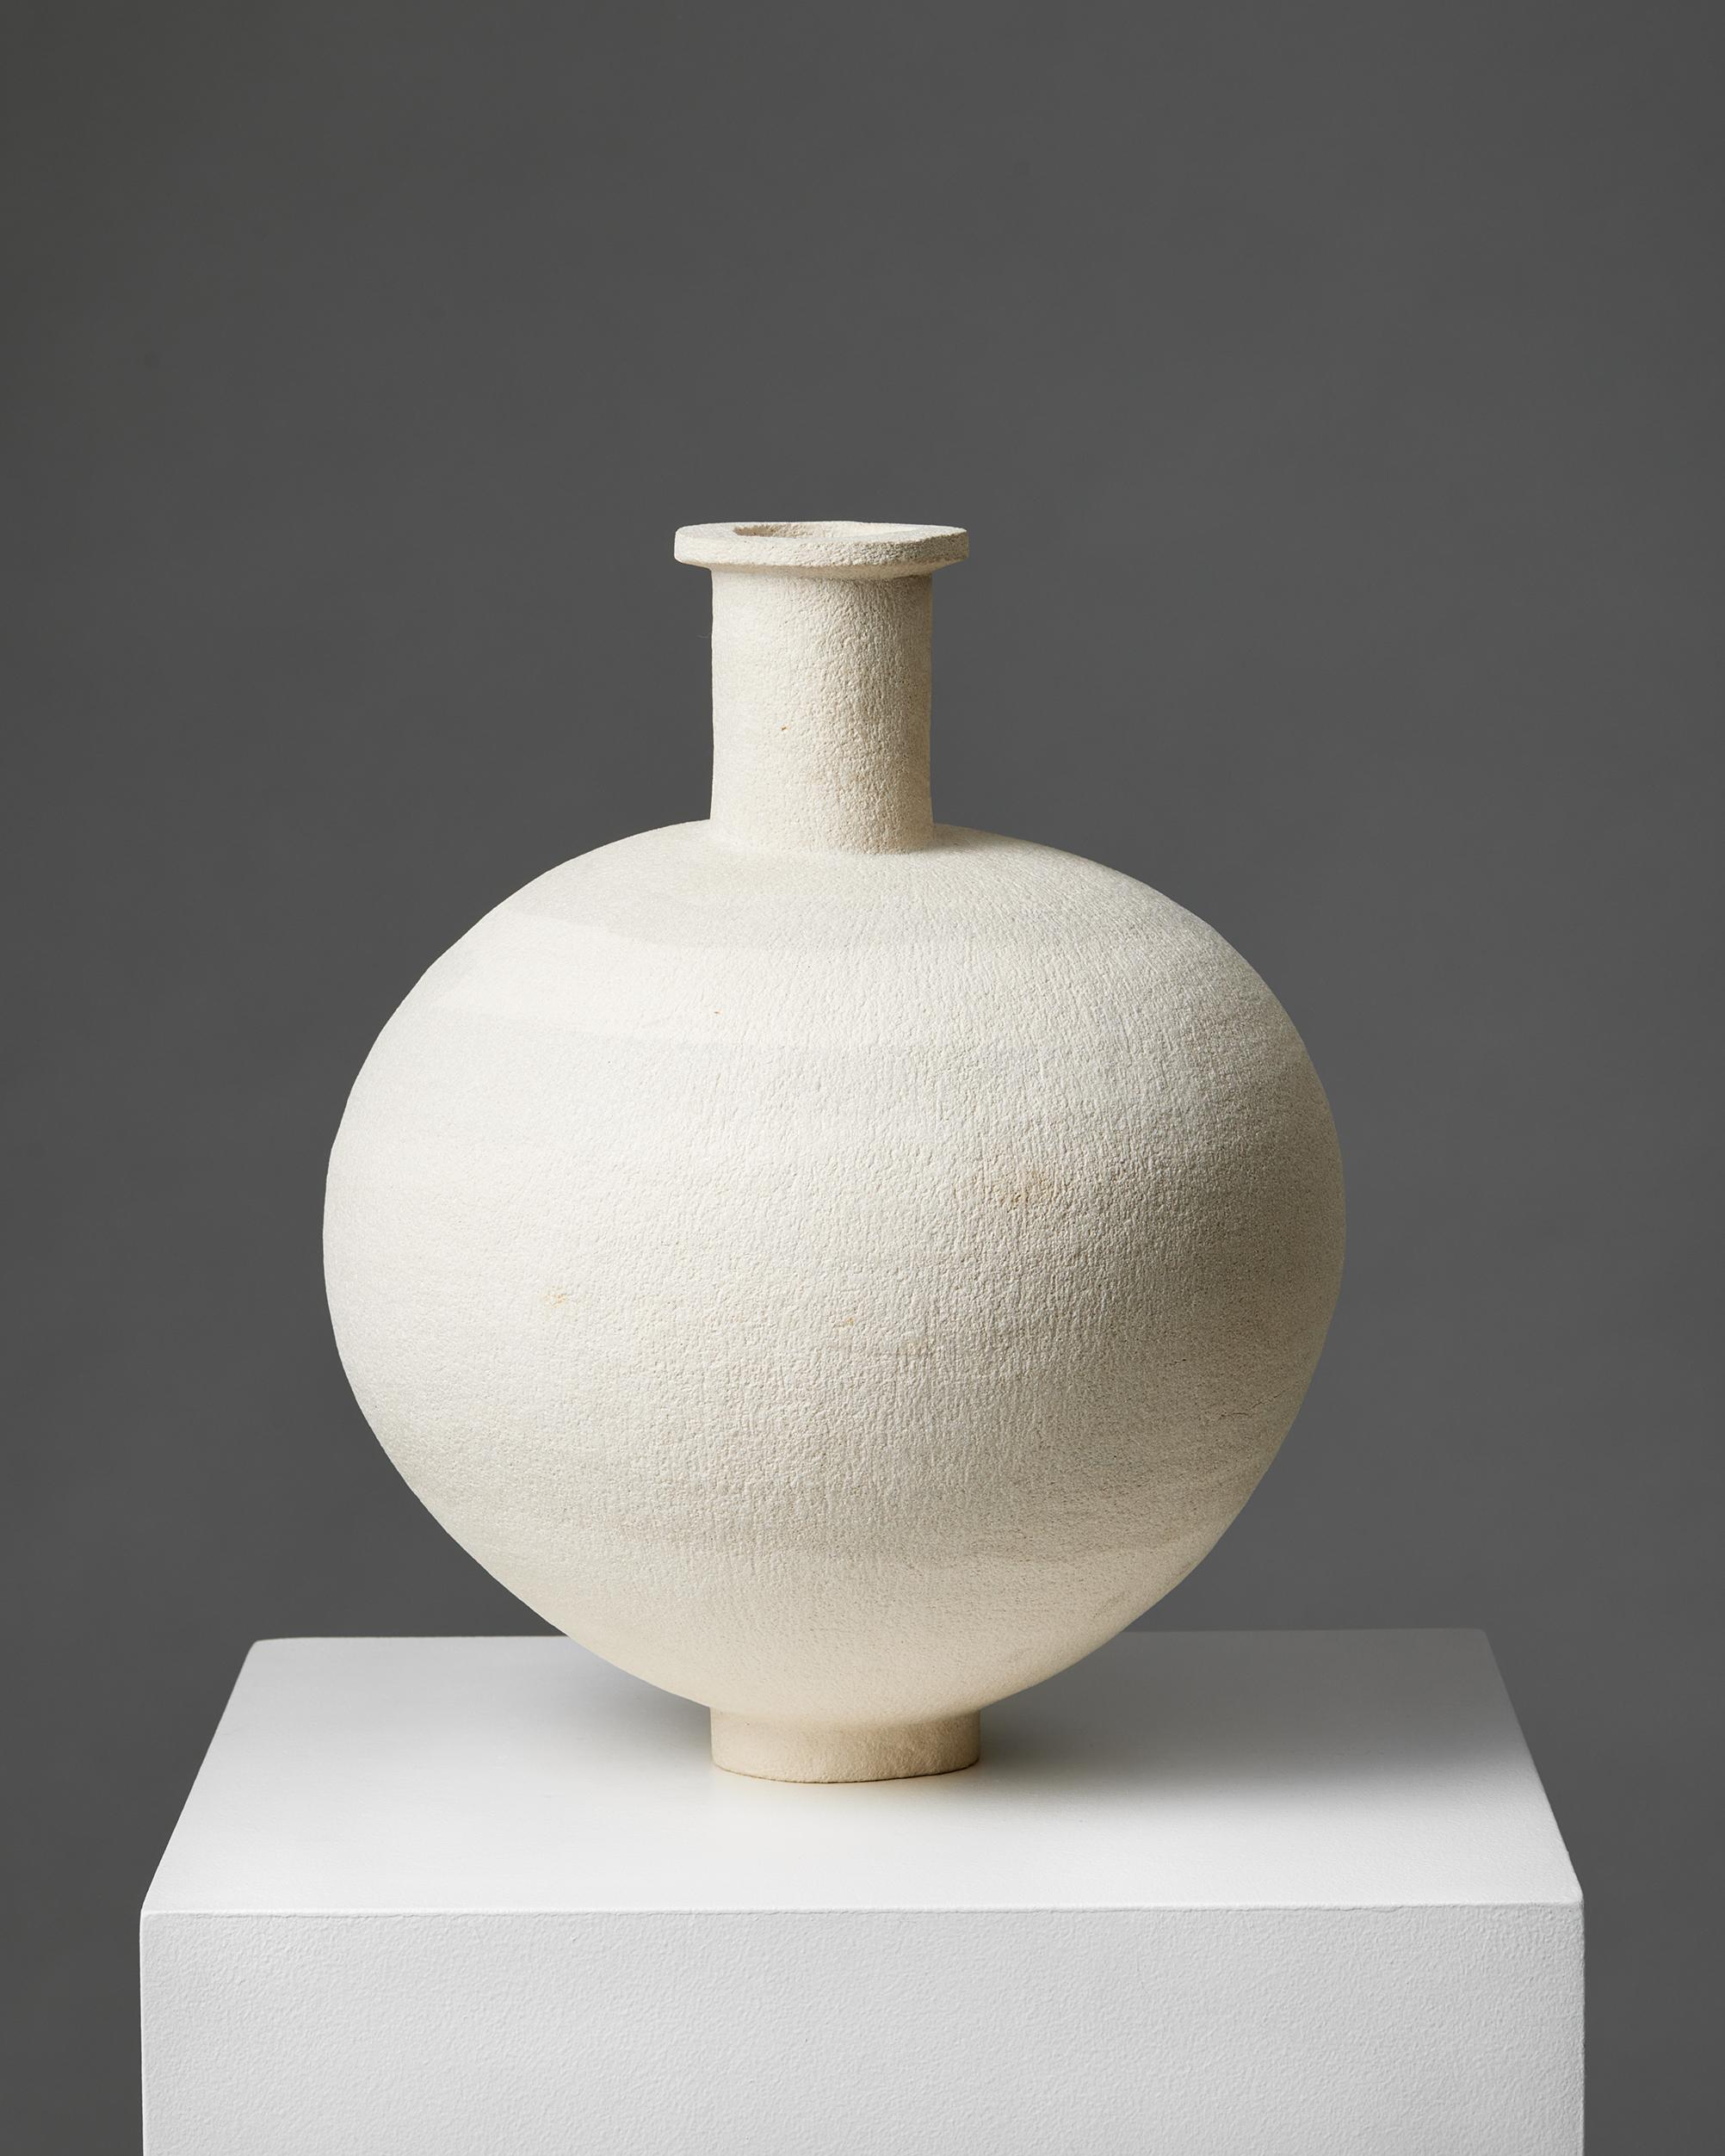 Vase, anonym, Schweden, 1950er Jahre
Unterschrieben.

Steingut.

H: 36 cm / 14''
Durchmesser: 26 cm / 10 1/4''